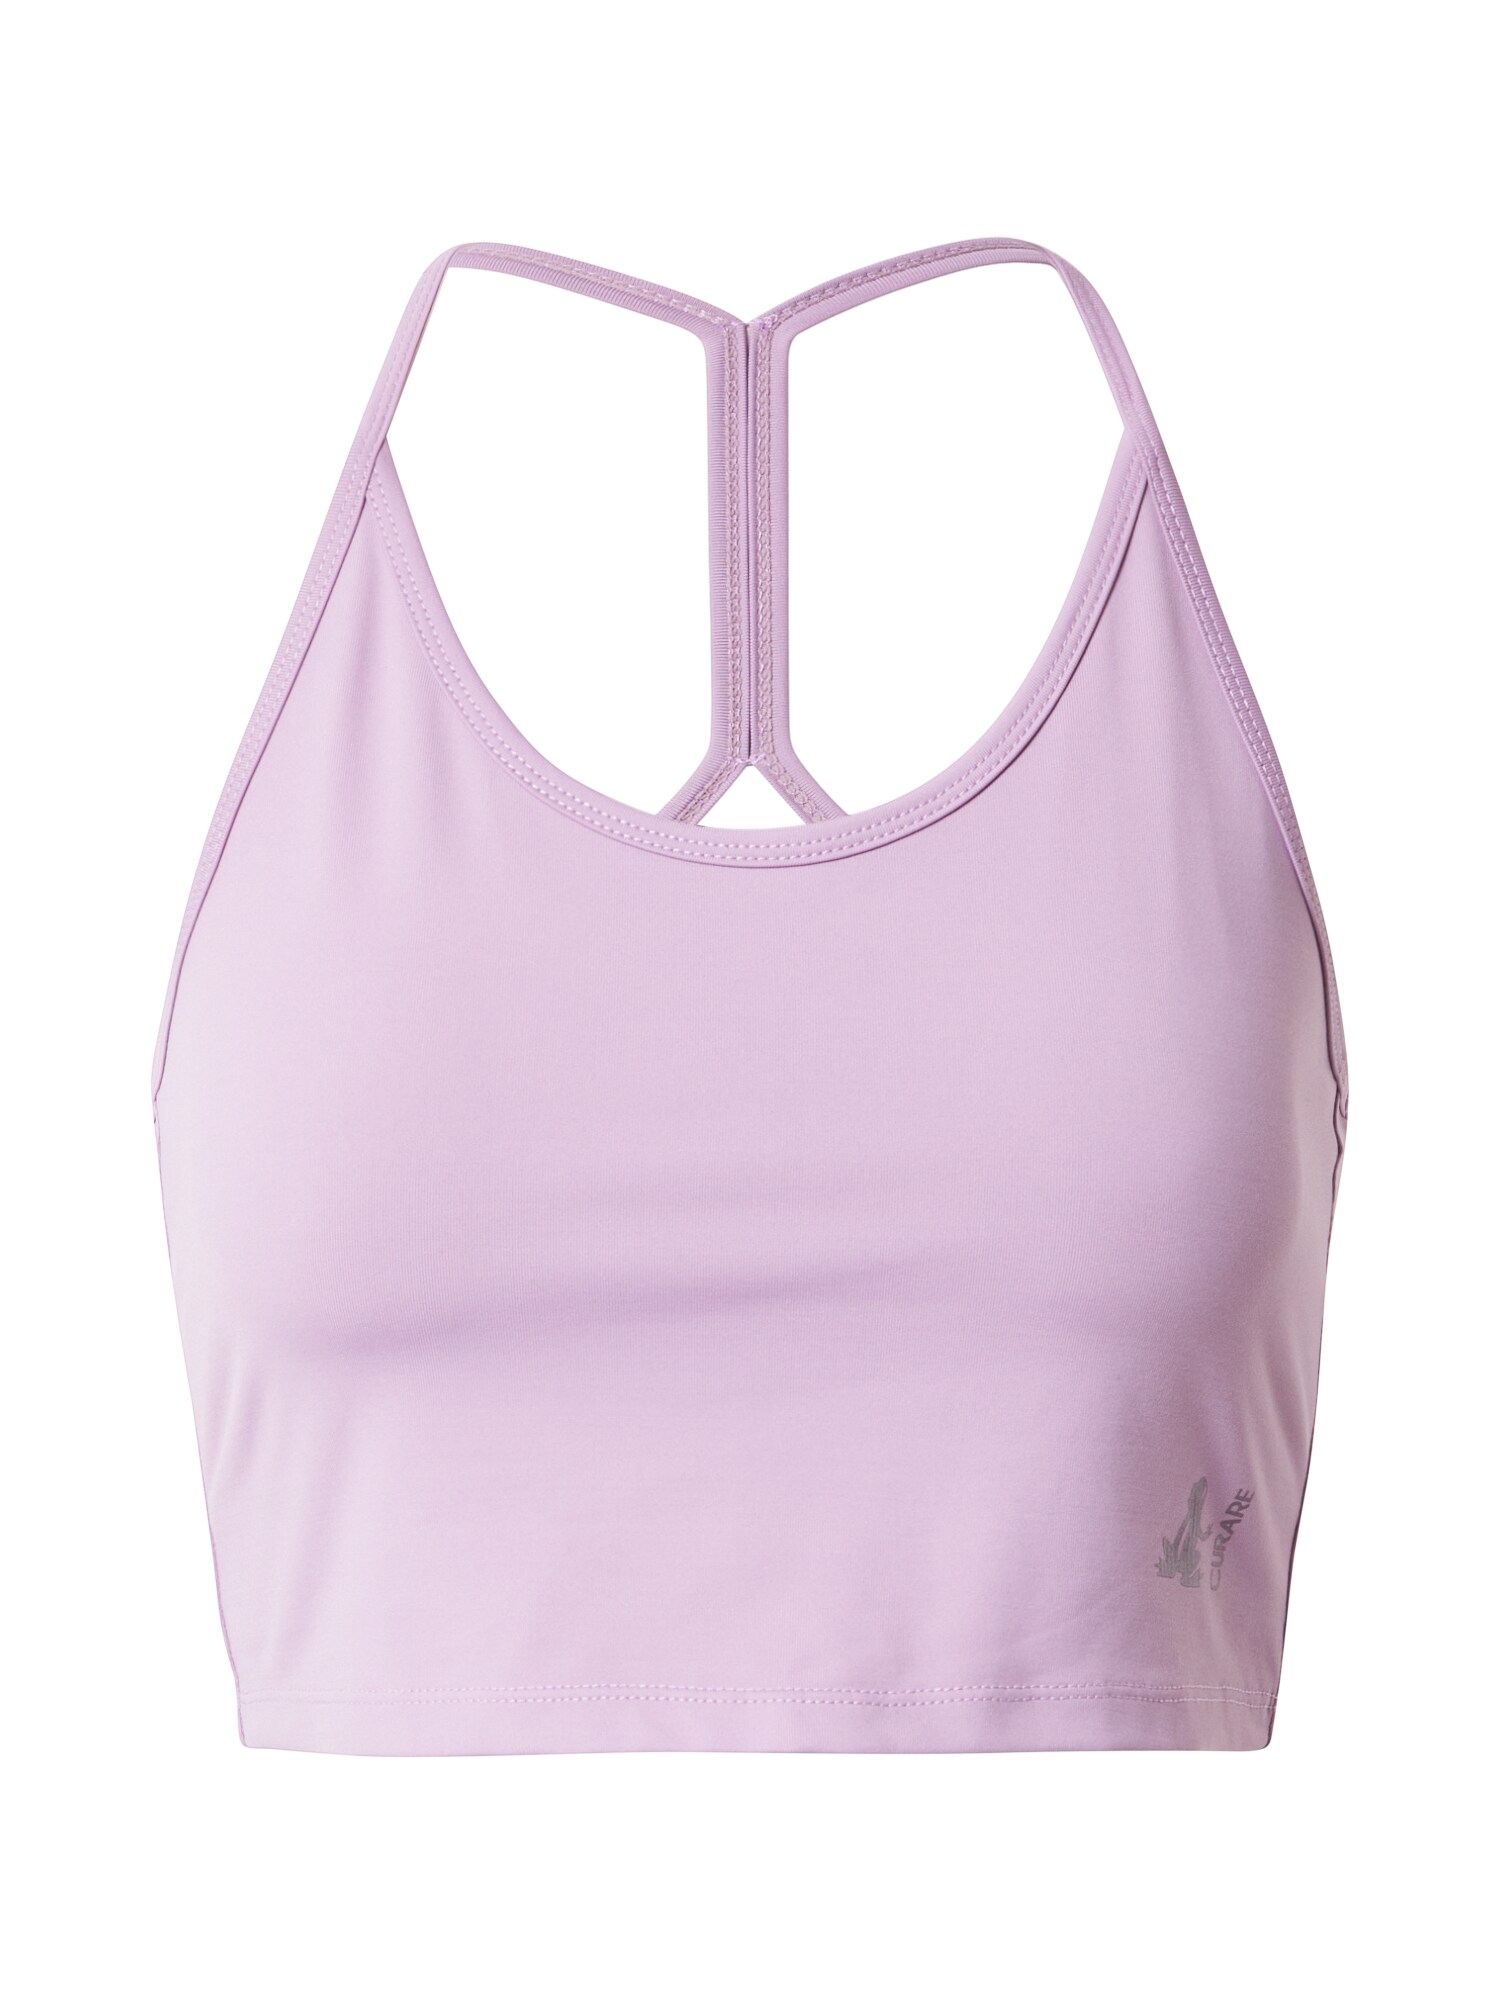 CURARE Yogawear Sportinė liemenėlė  rausvai violetinė spalva